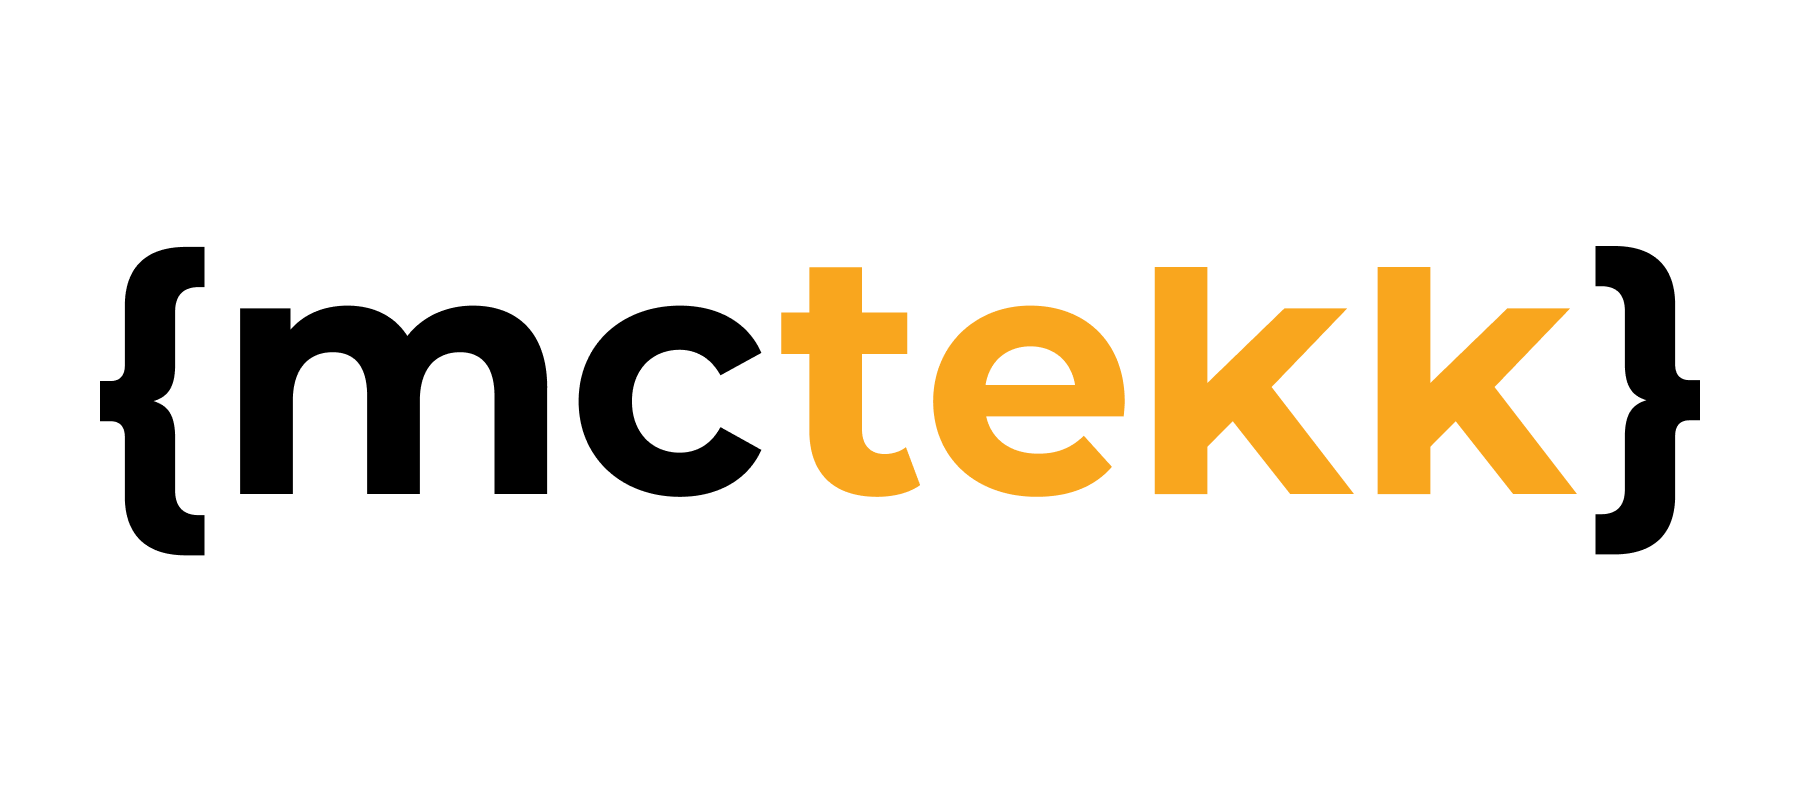 mctekk-logo